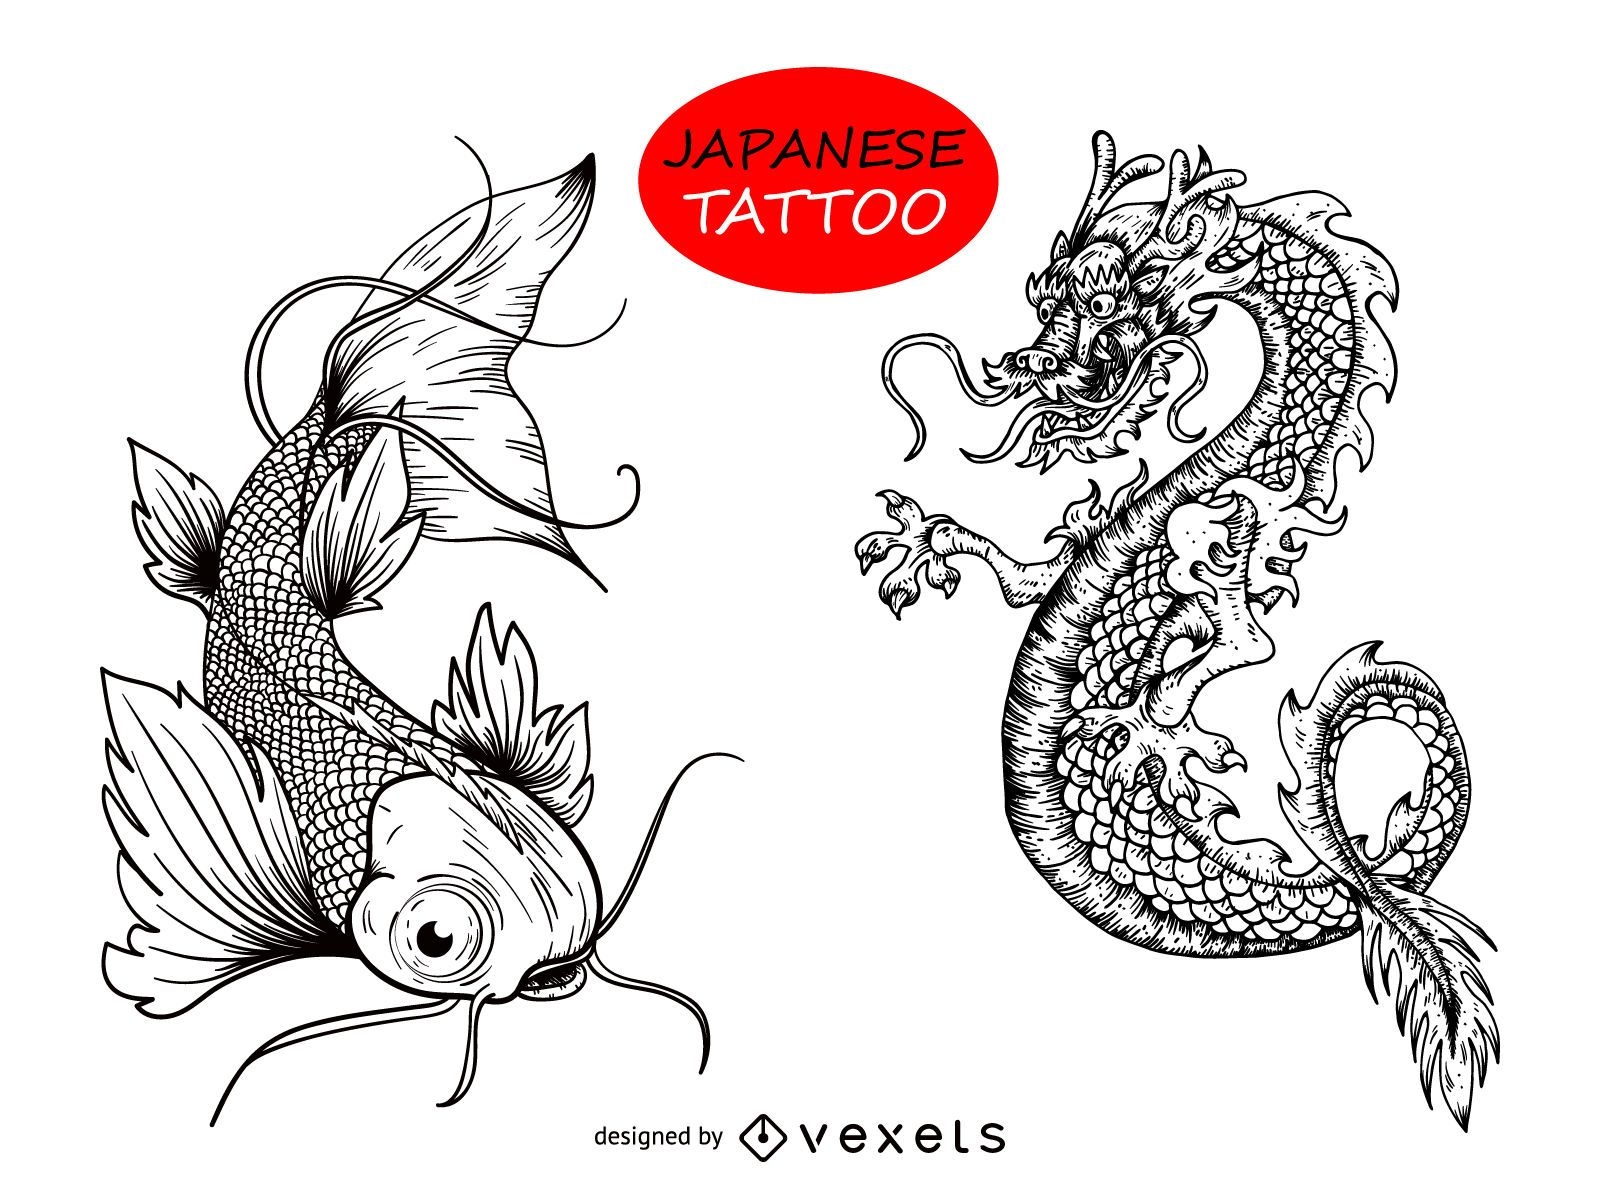 Desenho de tatuagem de peixe drag?o japon?s